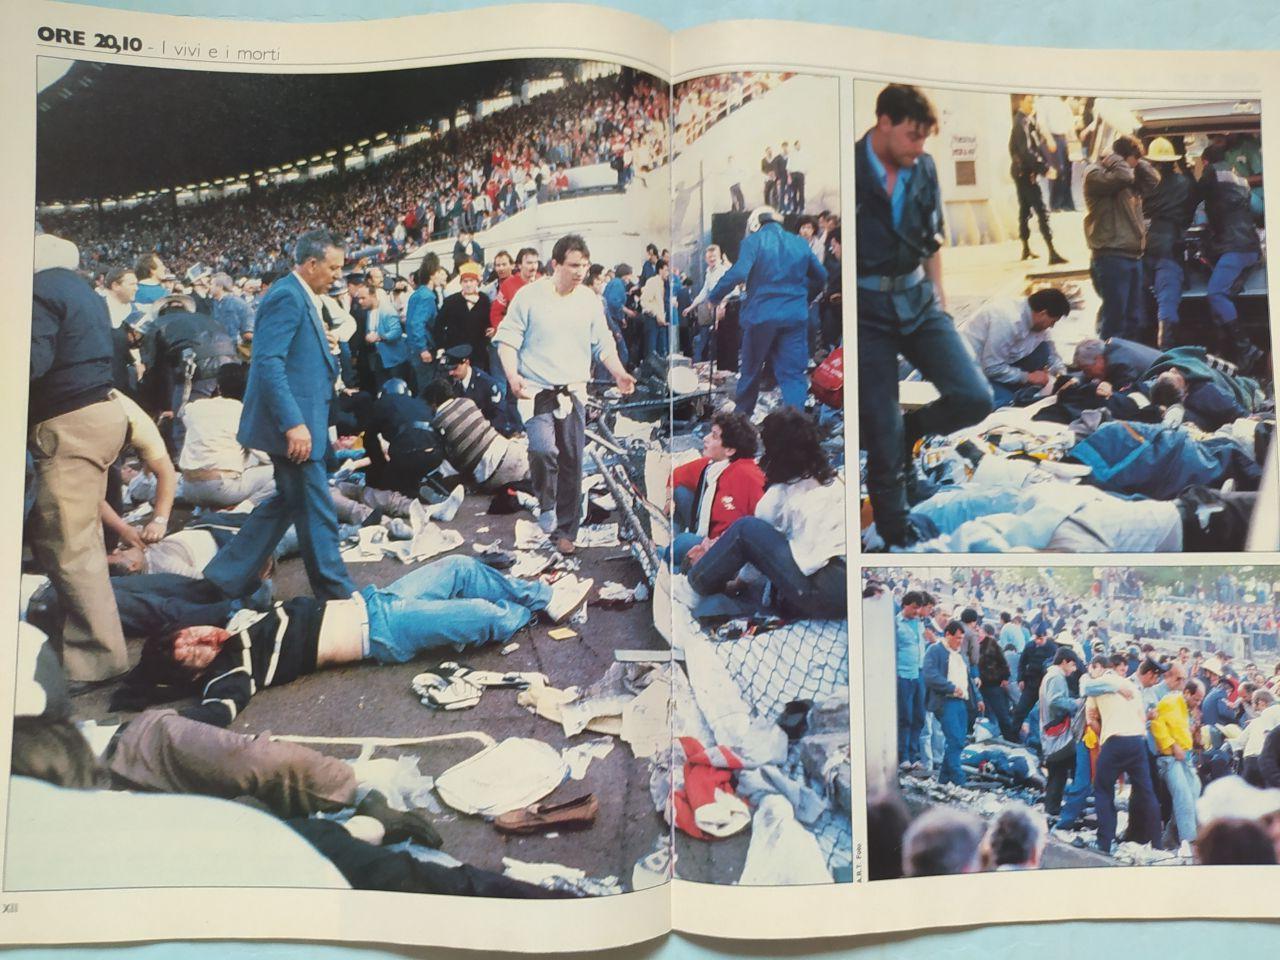 Журнал Гуэрин спортиво Guerin Sportivo 23 - 1985 Эйзельская трагедия 29.05.1985 4